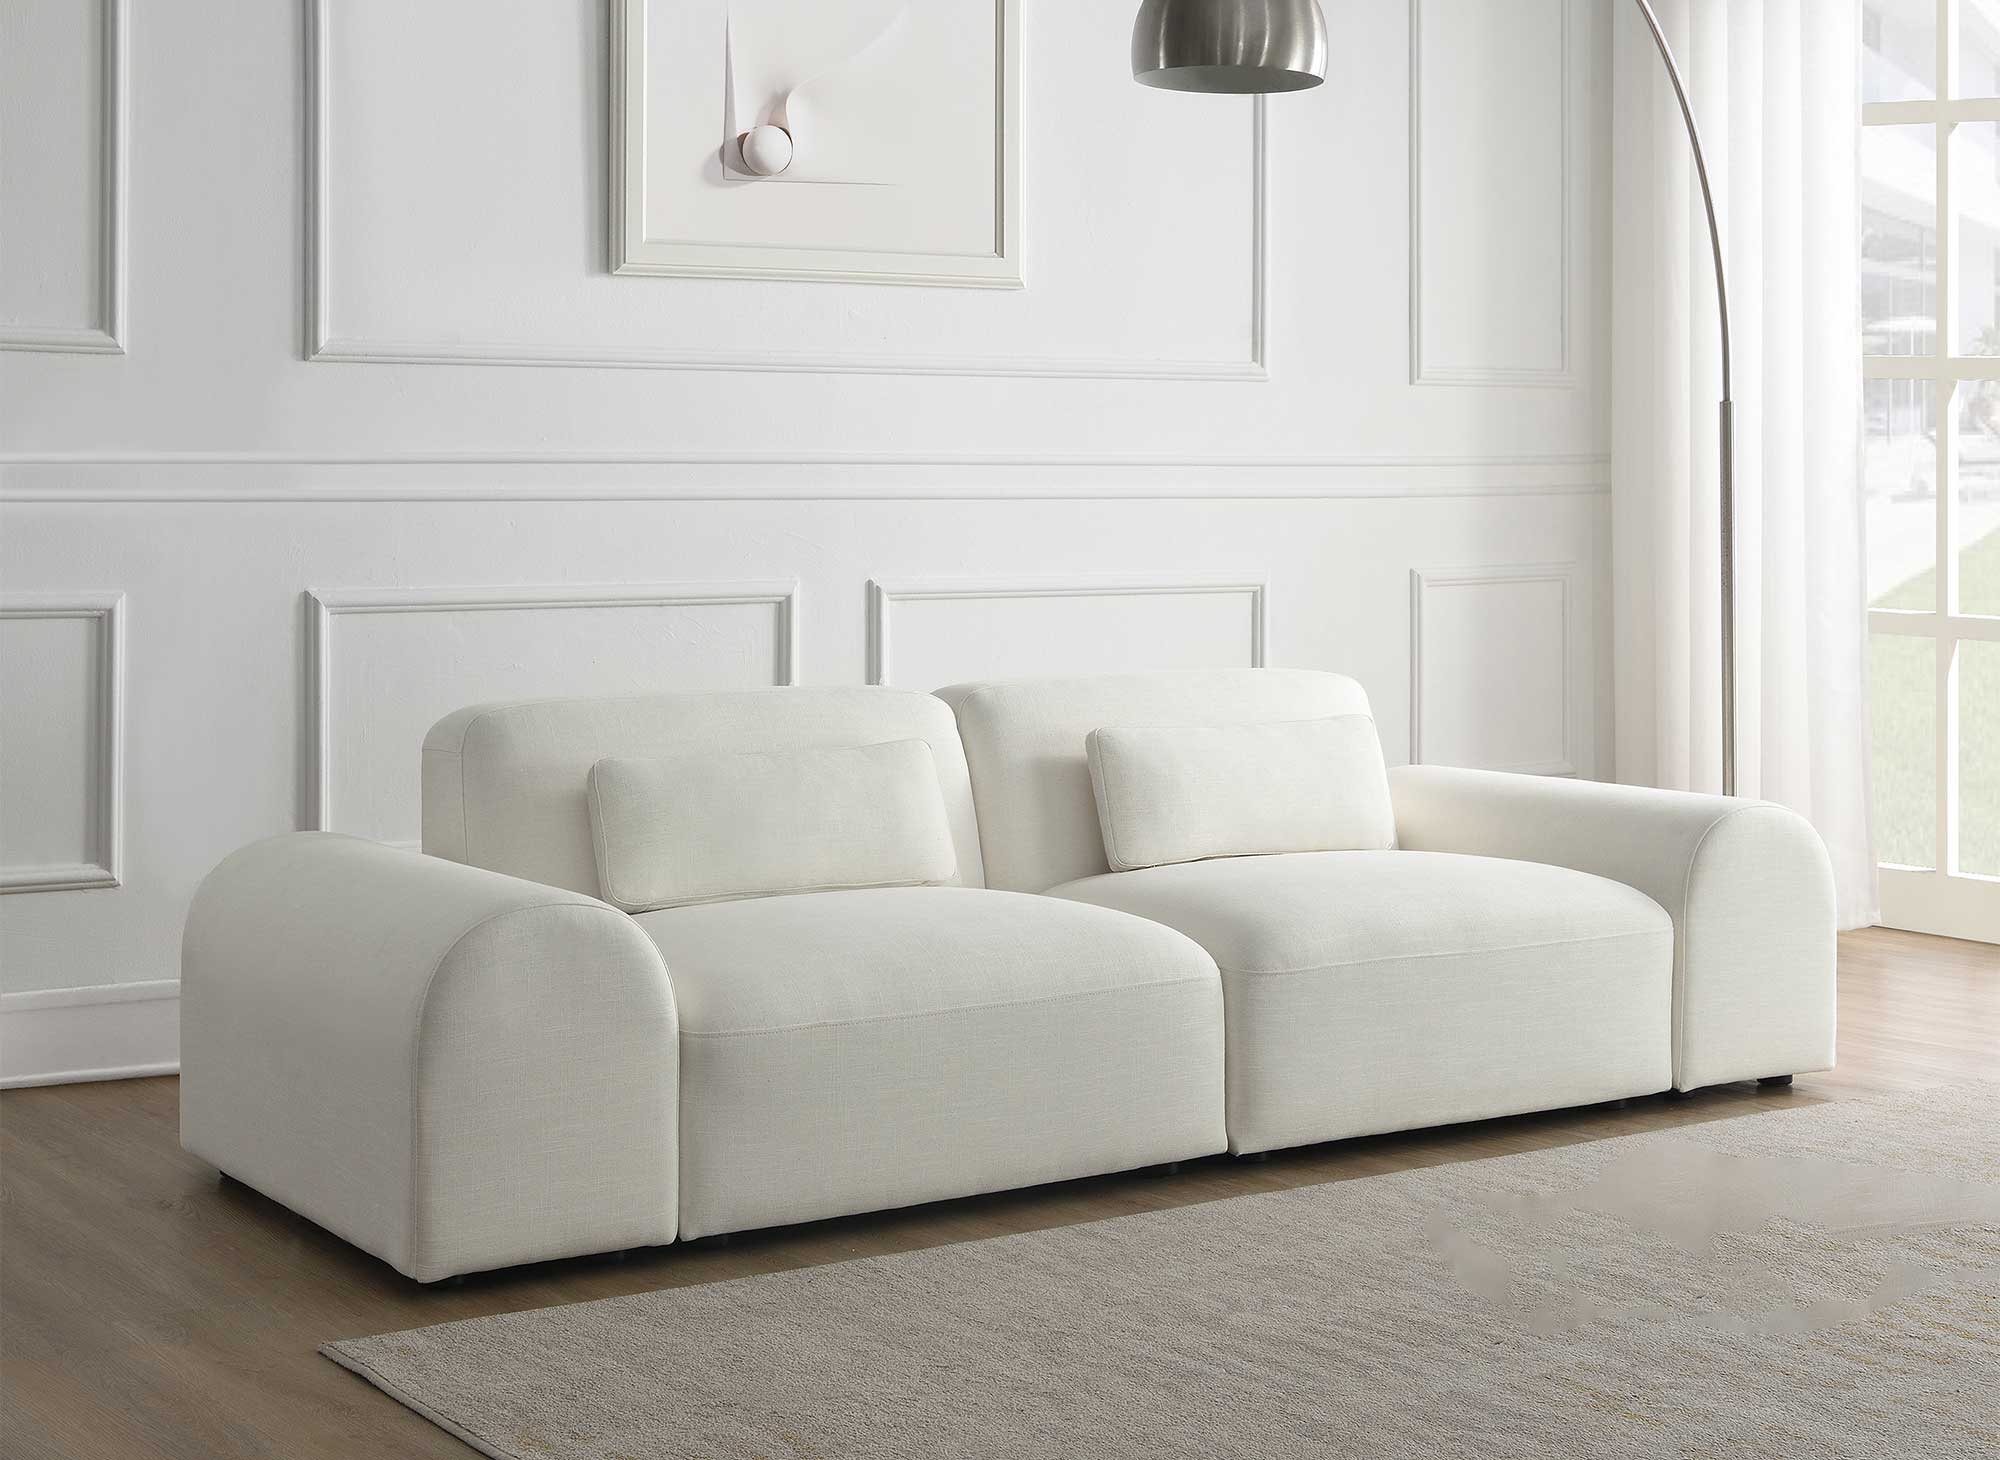 Canapé contemporain 3 places en tissu blanc écru EMMA